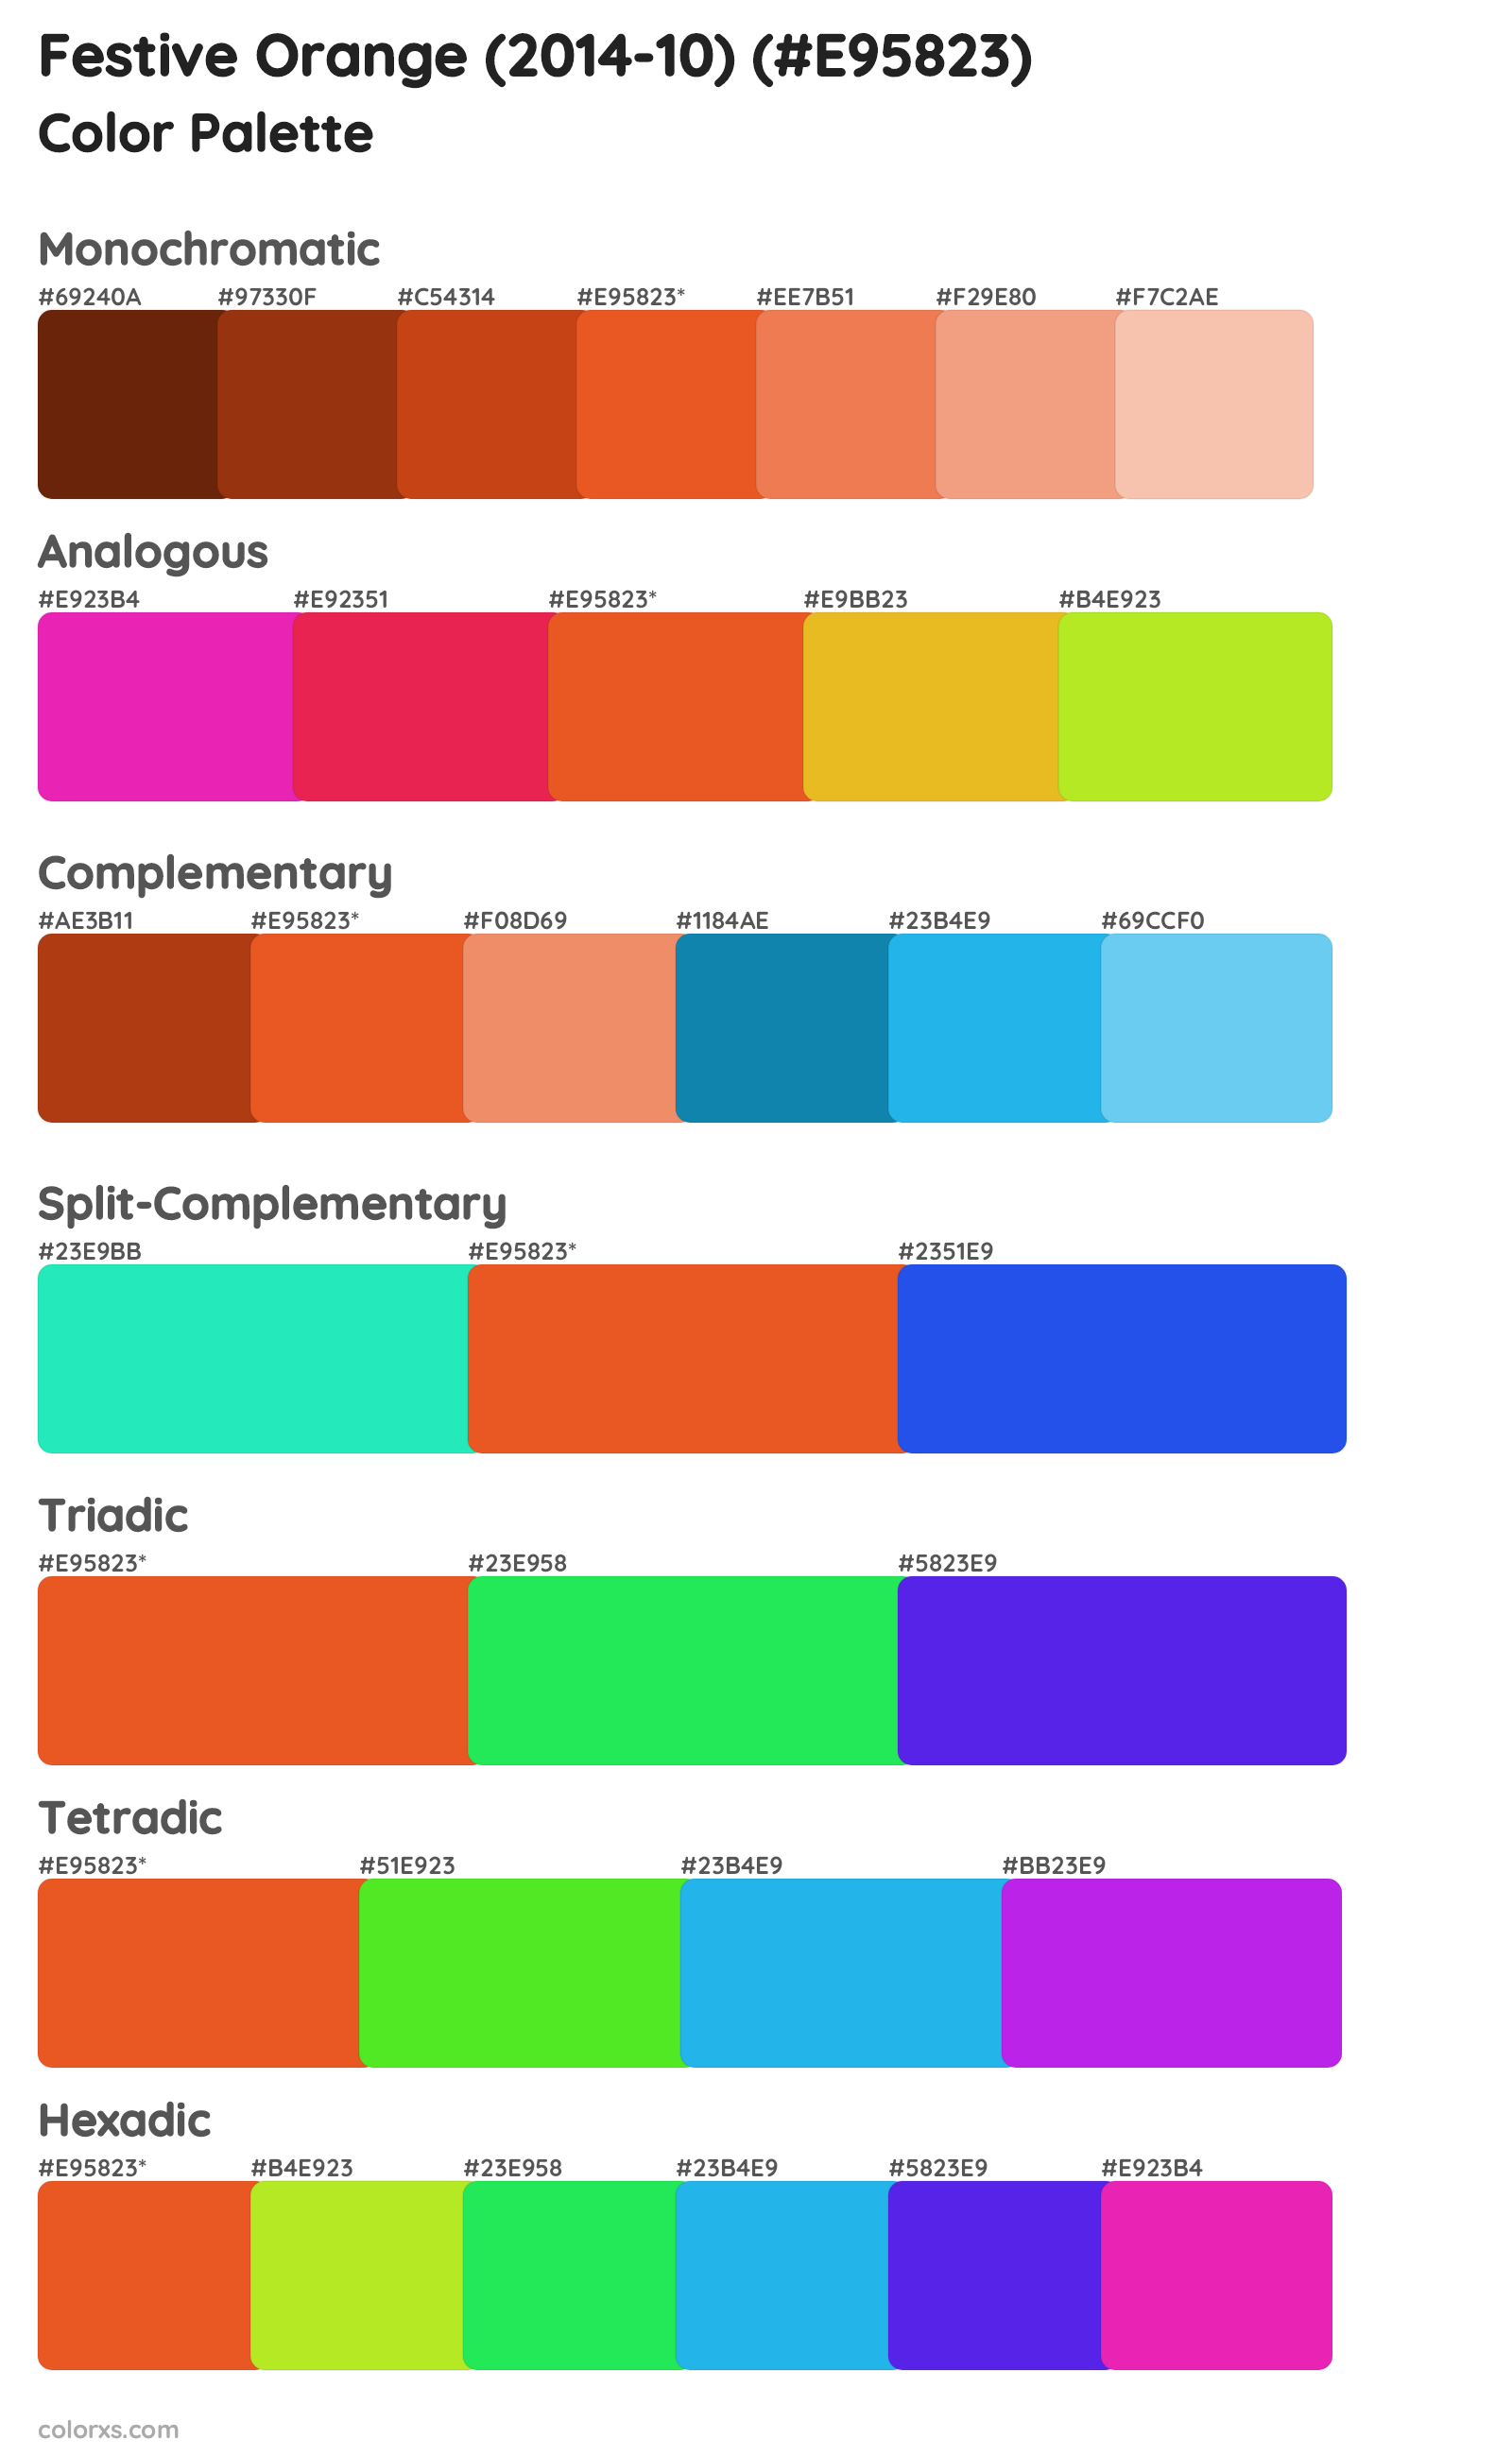 Festive Orange (2014-10) Color Scheme Palettes